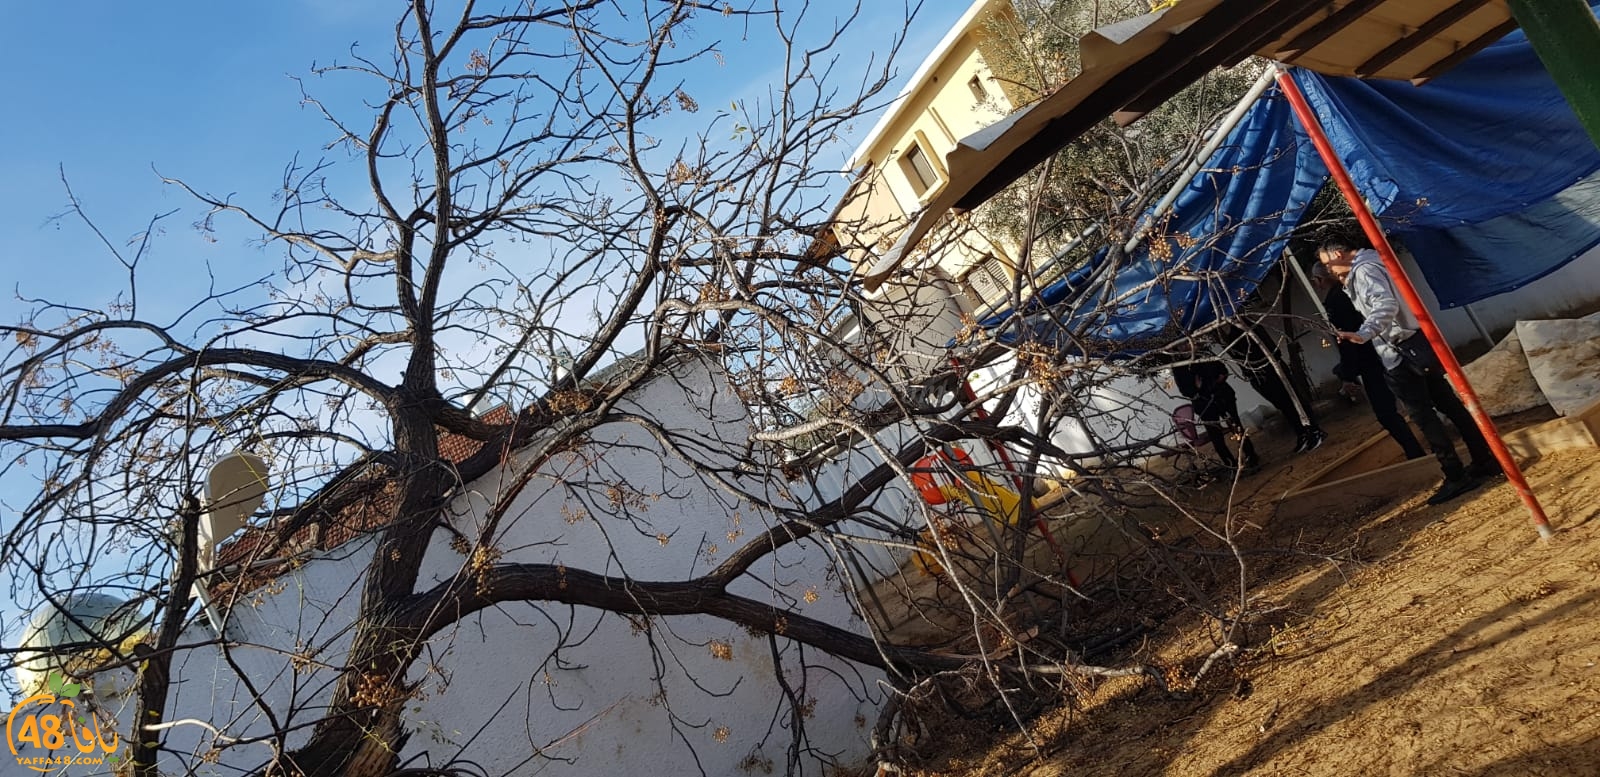  اللد: المطالبة بإزالة الأشجار بعد قطعها من ساحة حضانة مانجو